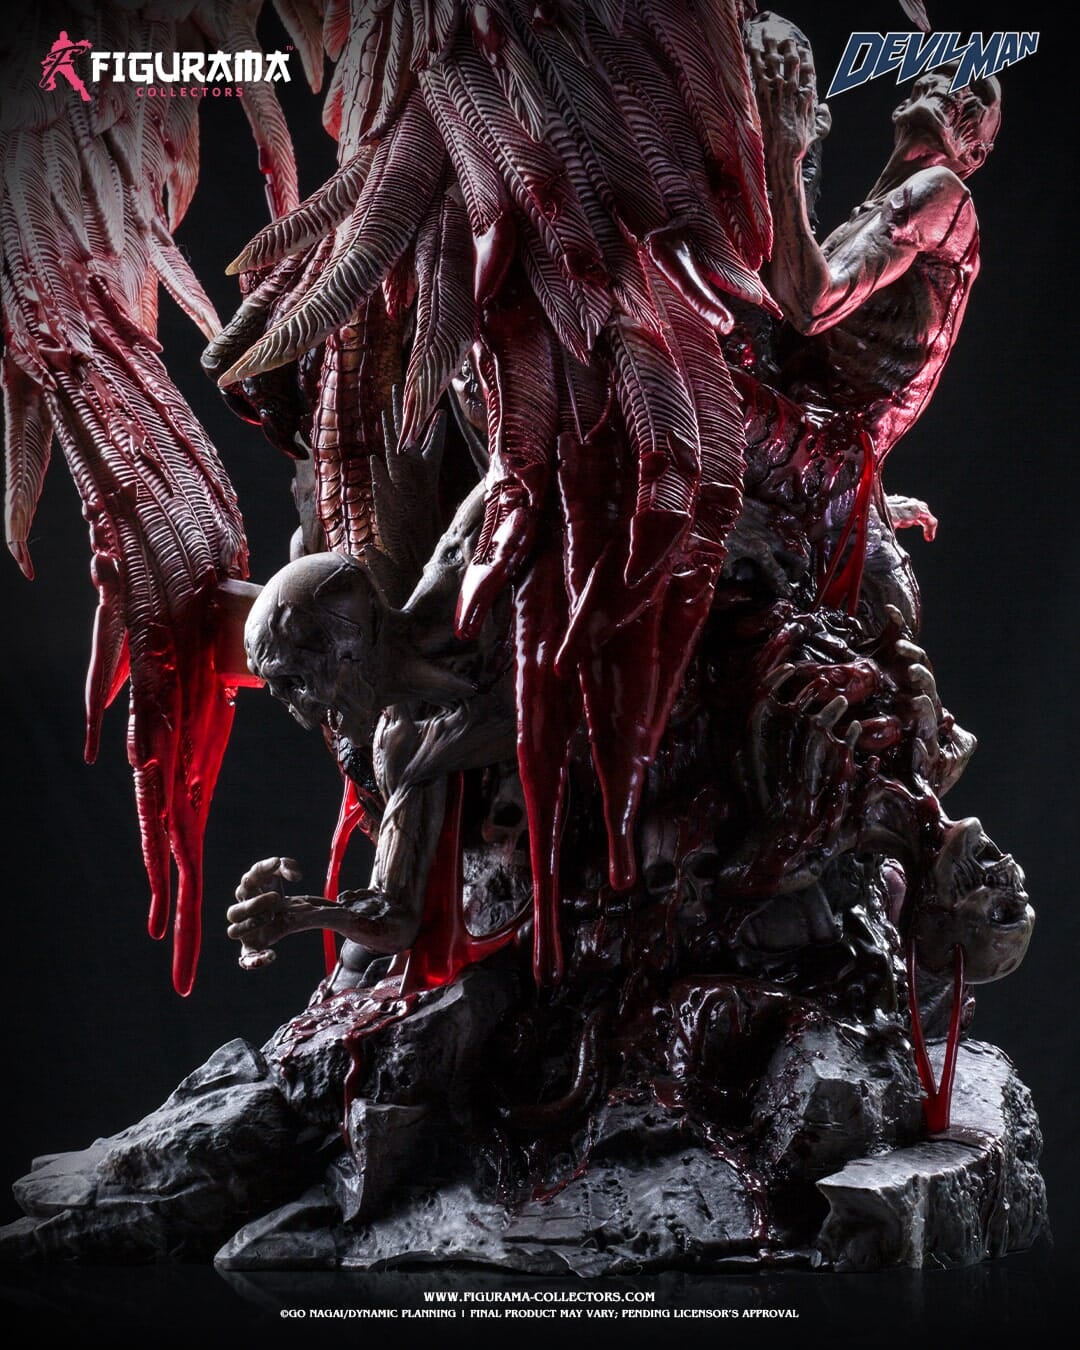 Deposit Plan- Devilman- Sirene Elite Exclusive Statue Resin Figures Figurama Collectors 